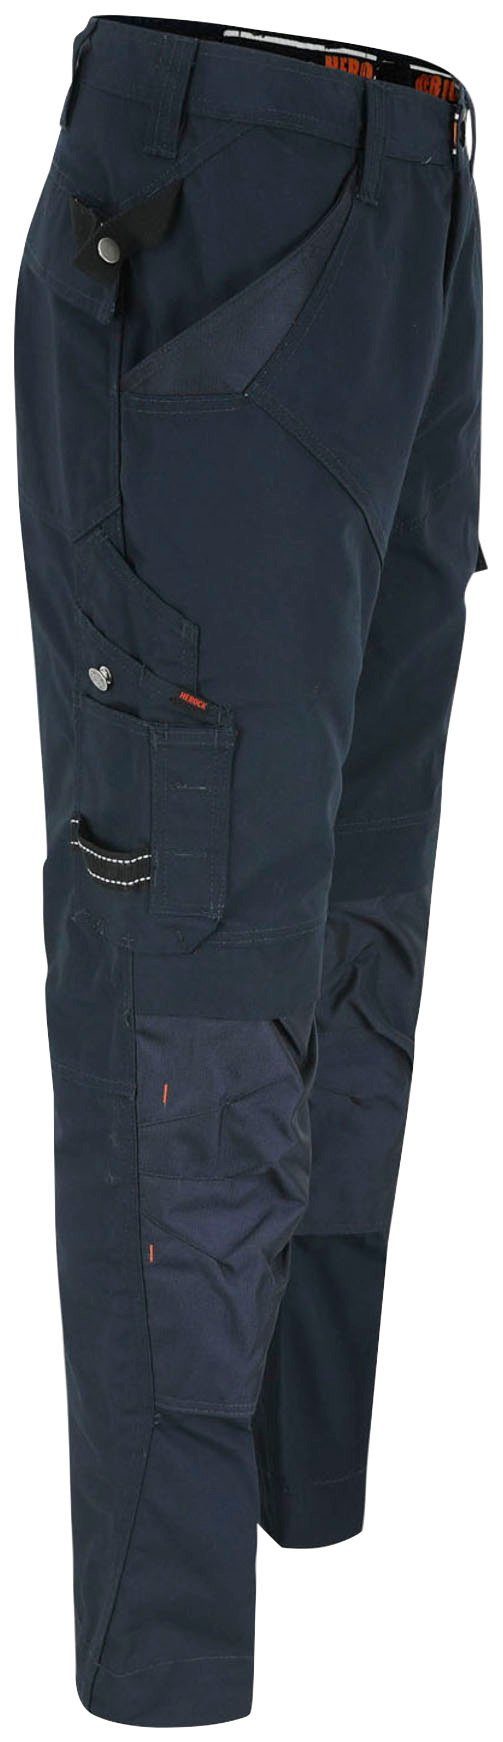 Taschen - 8 Bund - bequem - marine Regelbarer Herock Apollo Hose & Wasserabweisend Arbeitshose leicht